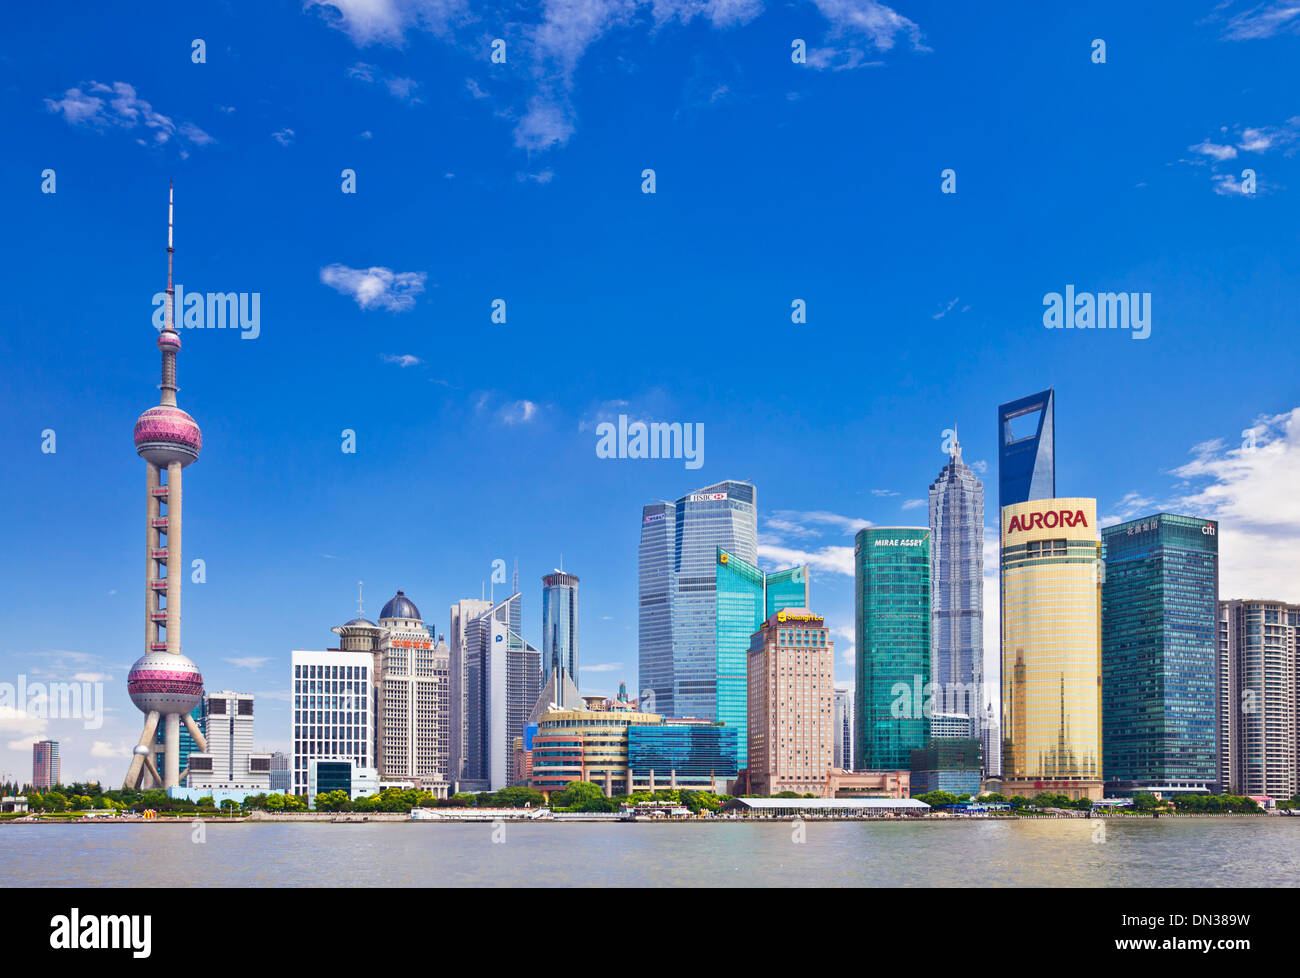 Les gratte-ciel de Shanghai avec la tour des perles orientales et le centre d'affaires de Shanghai pudong Skyline PRC, République Populaire de Chine, Asie Banque D'Images